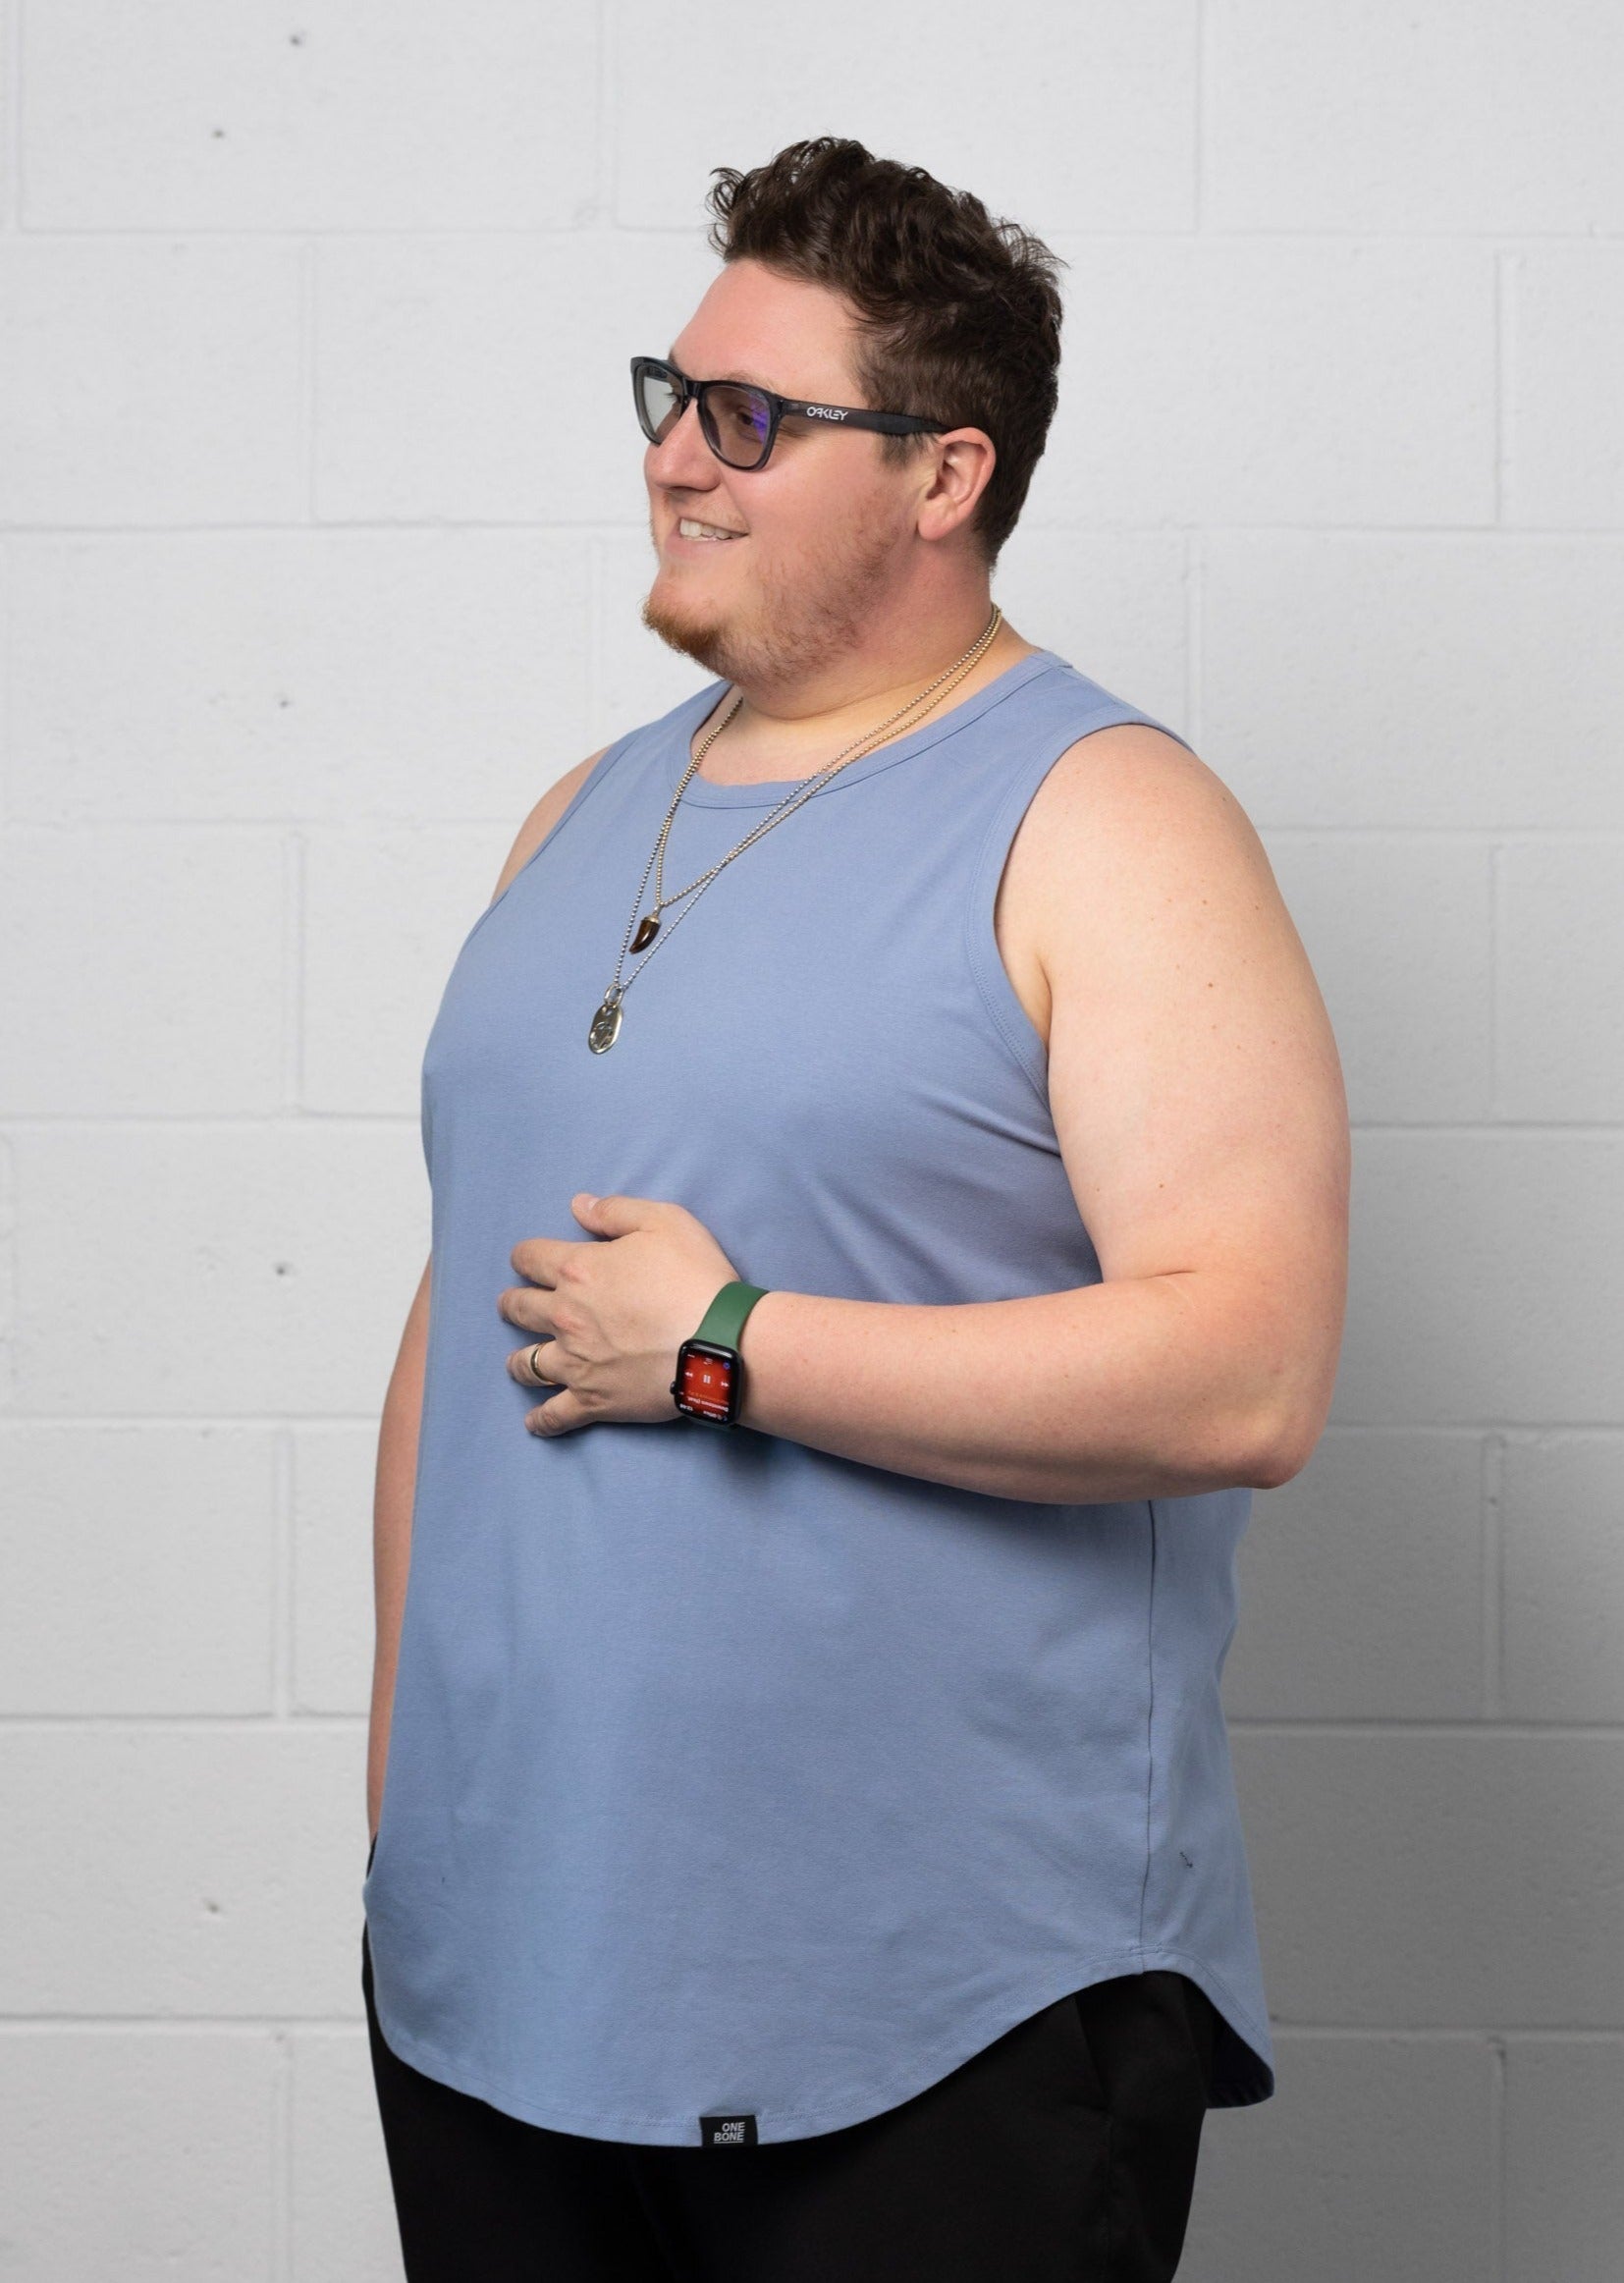 model-specs: Adam is 6-3 | 325 lbs | size 2